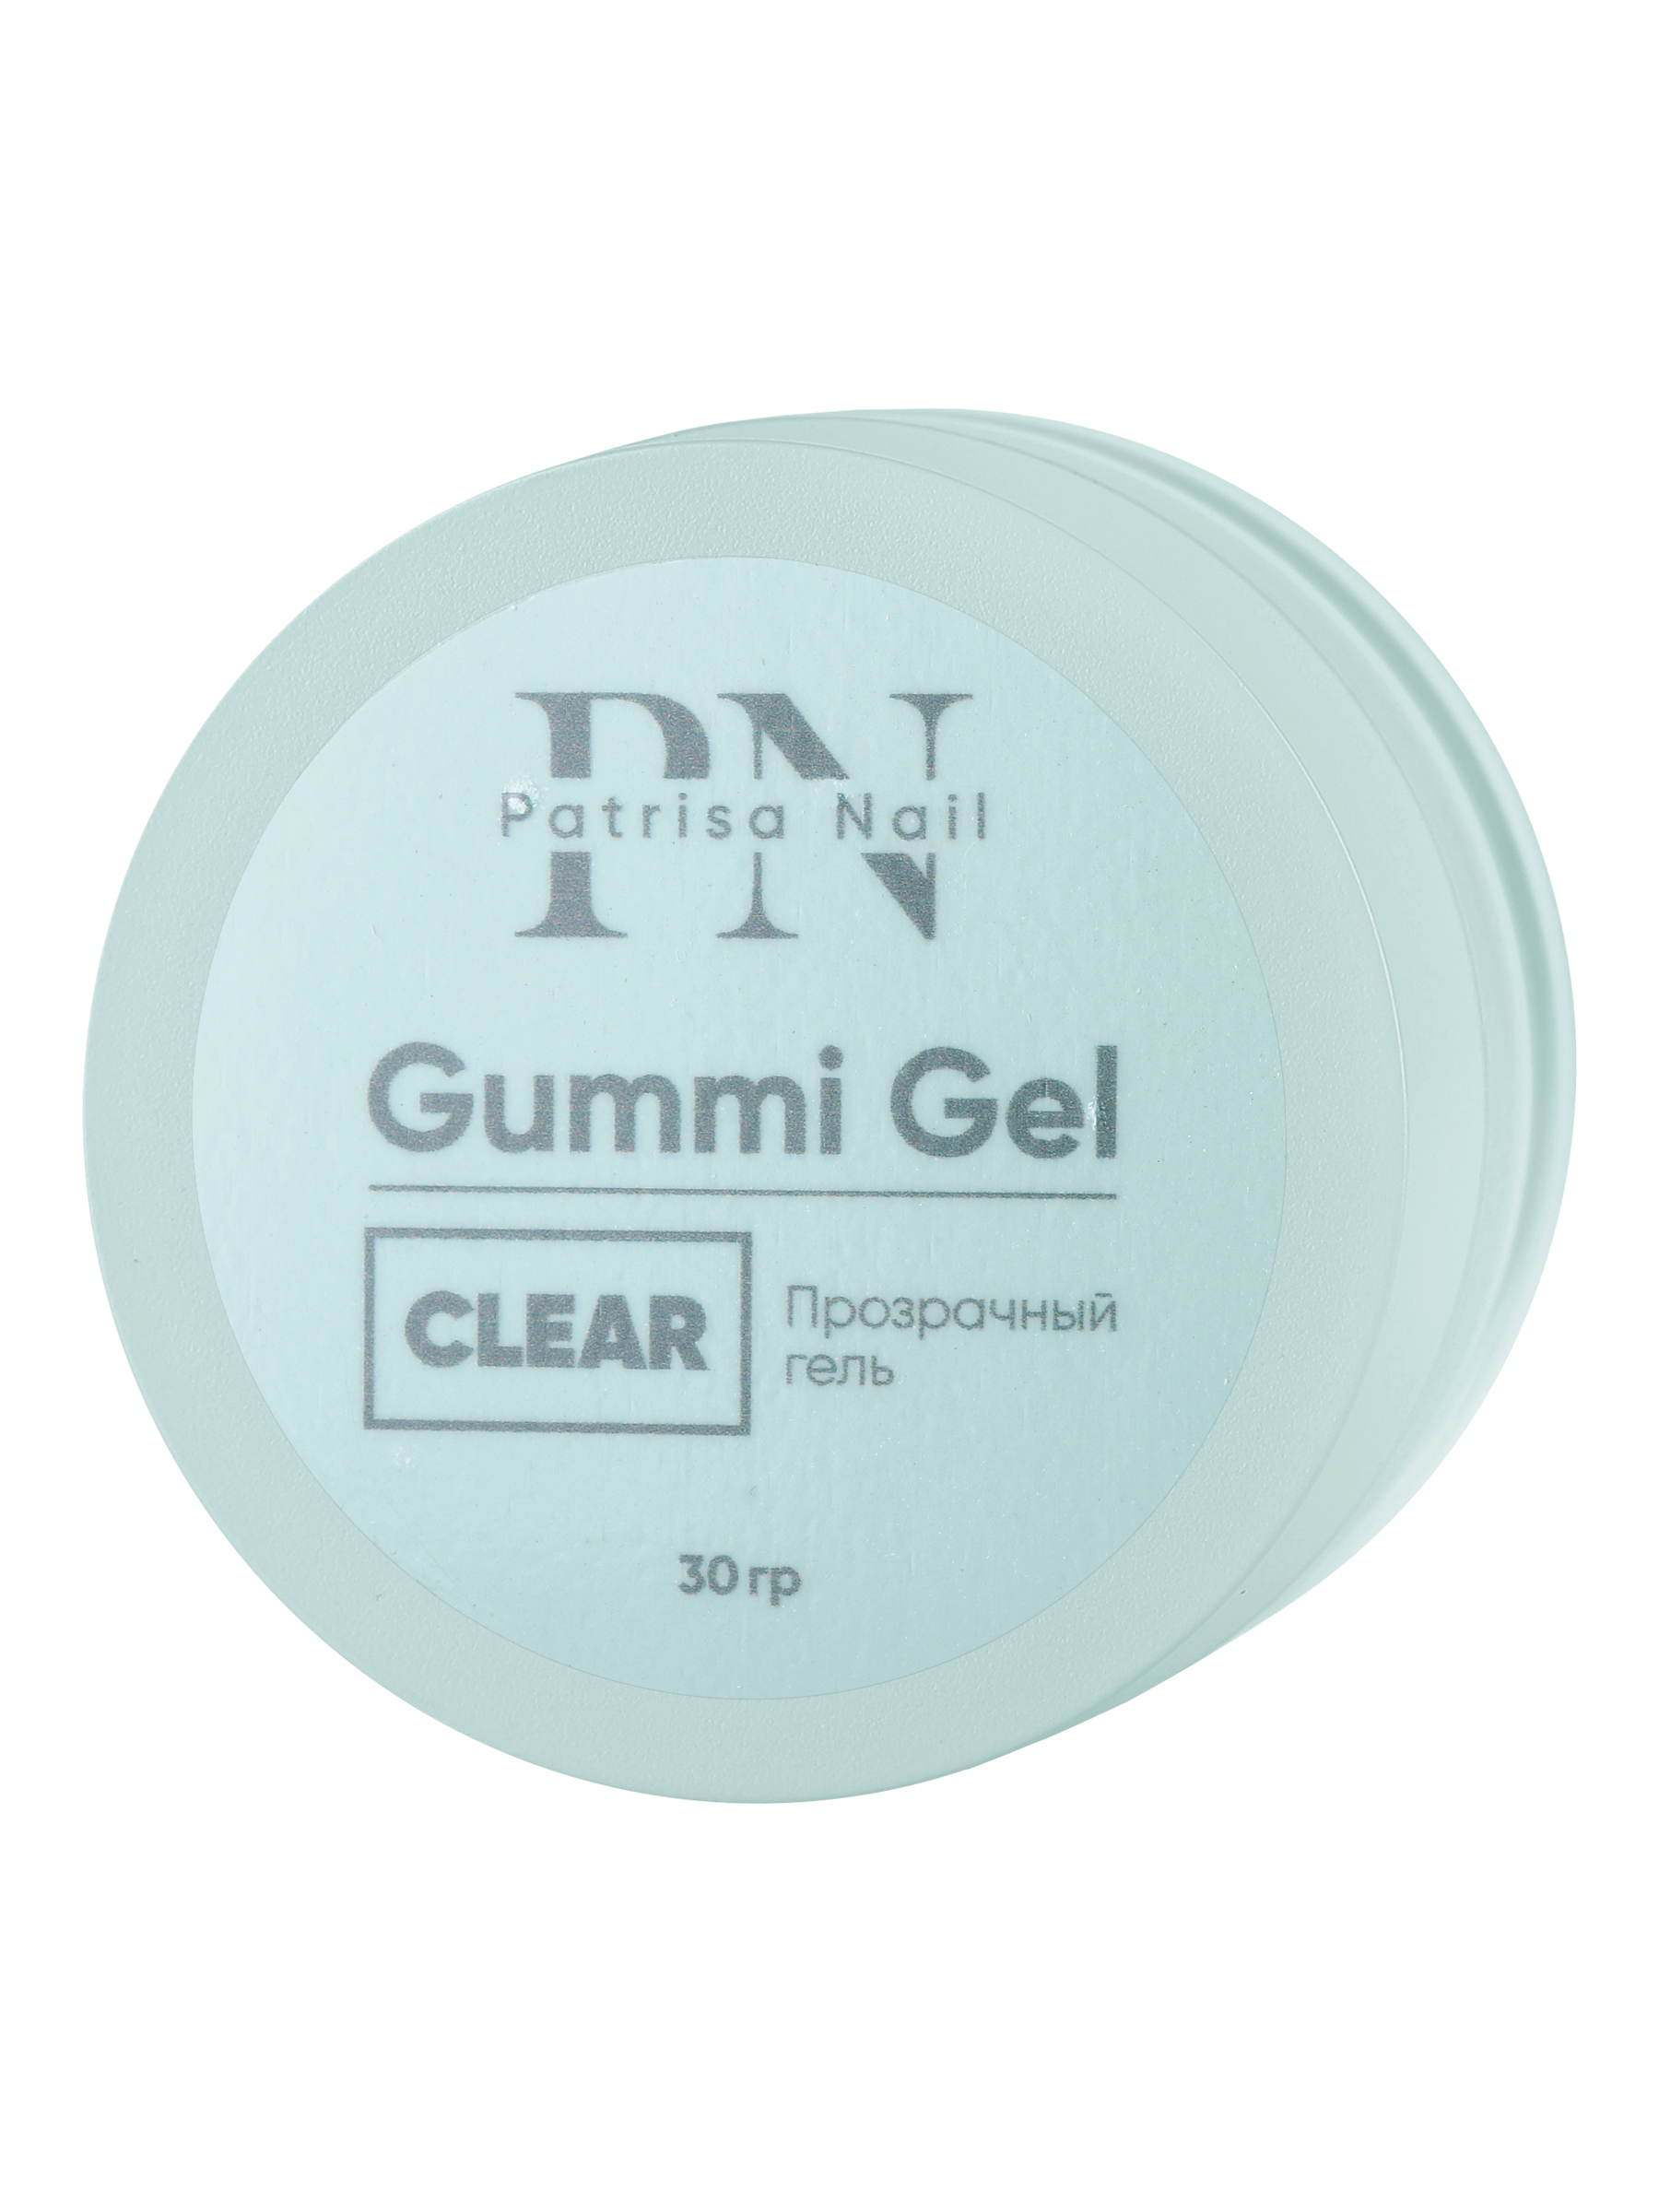 Прозрачный гель Patrisa nail Gummi Gel Clear высокой вязкости 30 г тёмный шатен оксидативный тонирующий гель color gloss clear